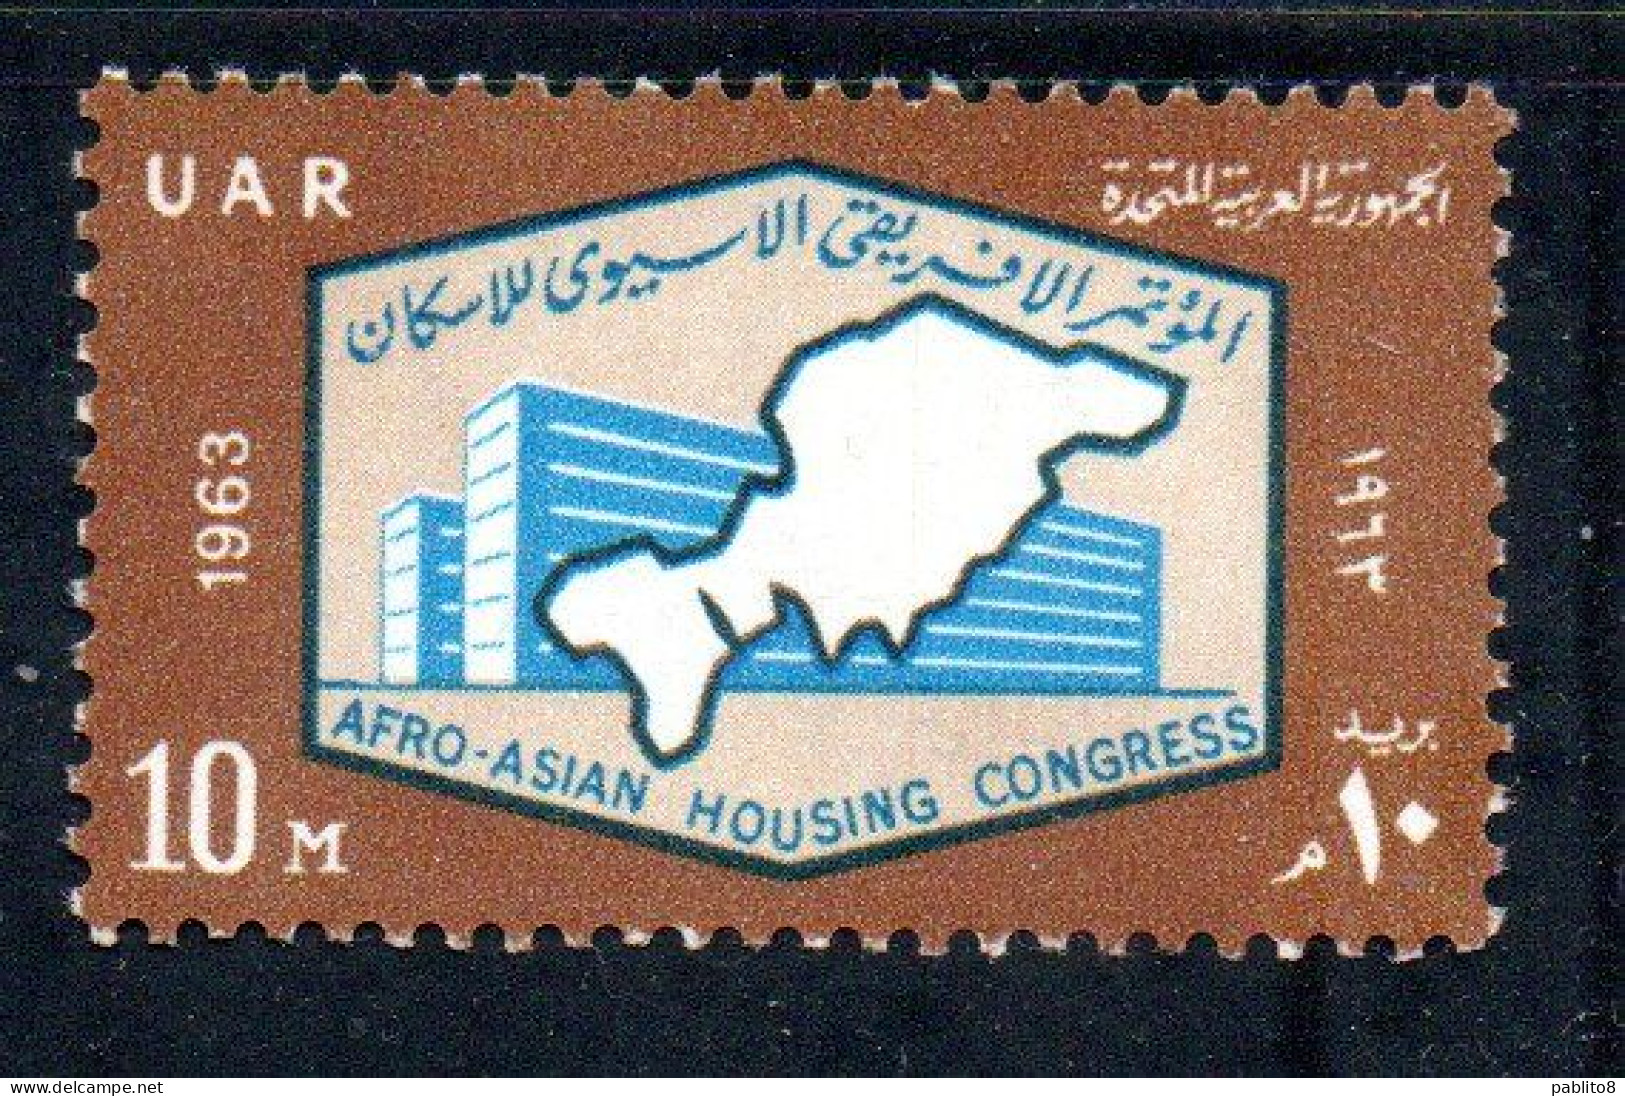 UAR EGYPT EGITTO 1963 AFRO-ASIAN HOUSING CONGRESS MODERN BUILDING AND MAP 10m MNH - Ungebraucht